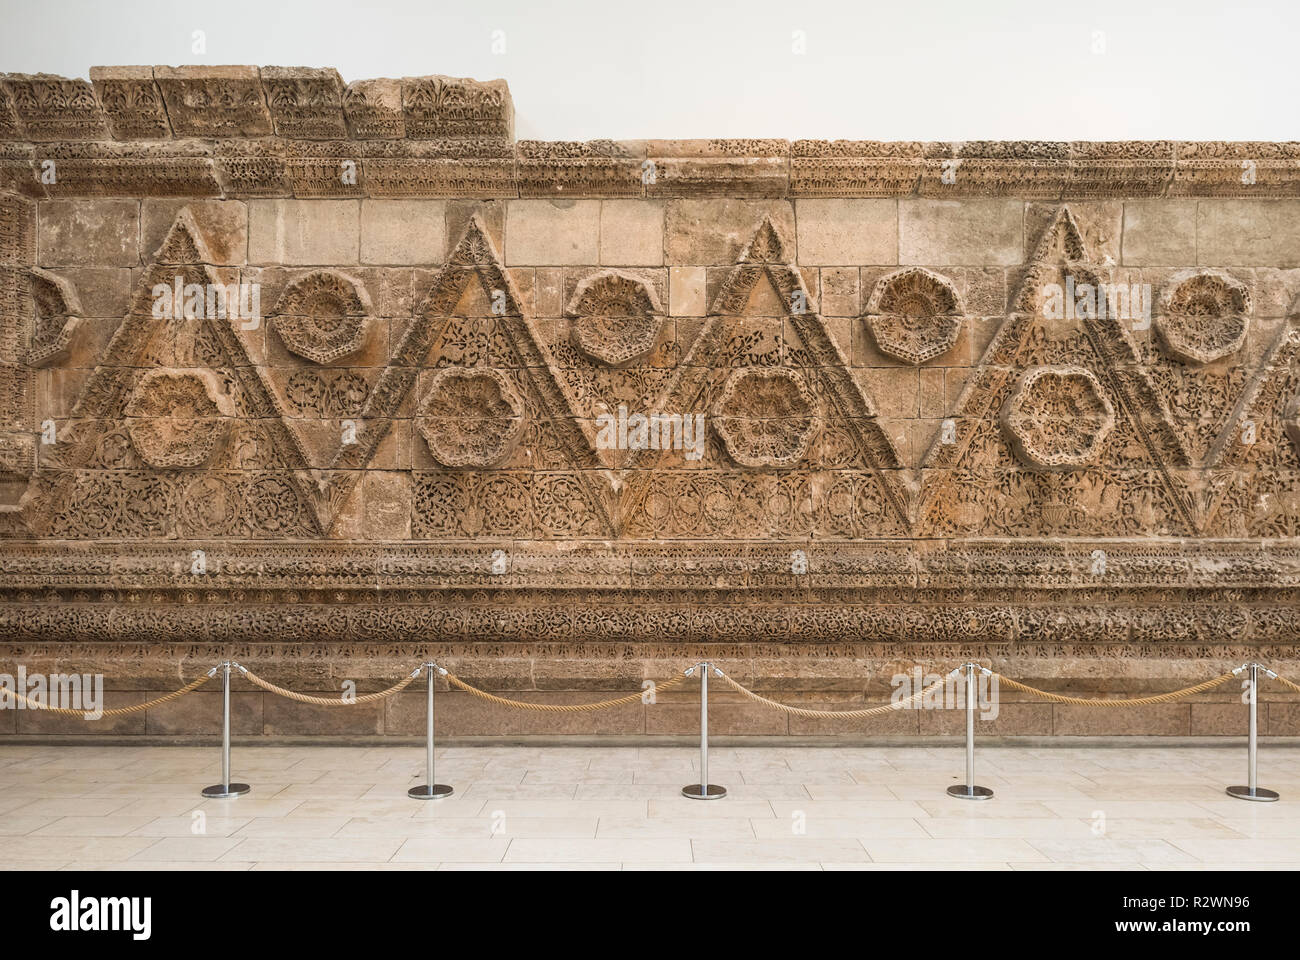 Berlin. Deutschland. Pergamon Museum. Die Mshatta Fassade, Teil einer eingerichteten Wüste schloss Wand von einem Palast der Umayyaden Qasr Al-Mshatta, in Jorda gebaut Stockfoto